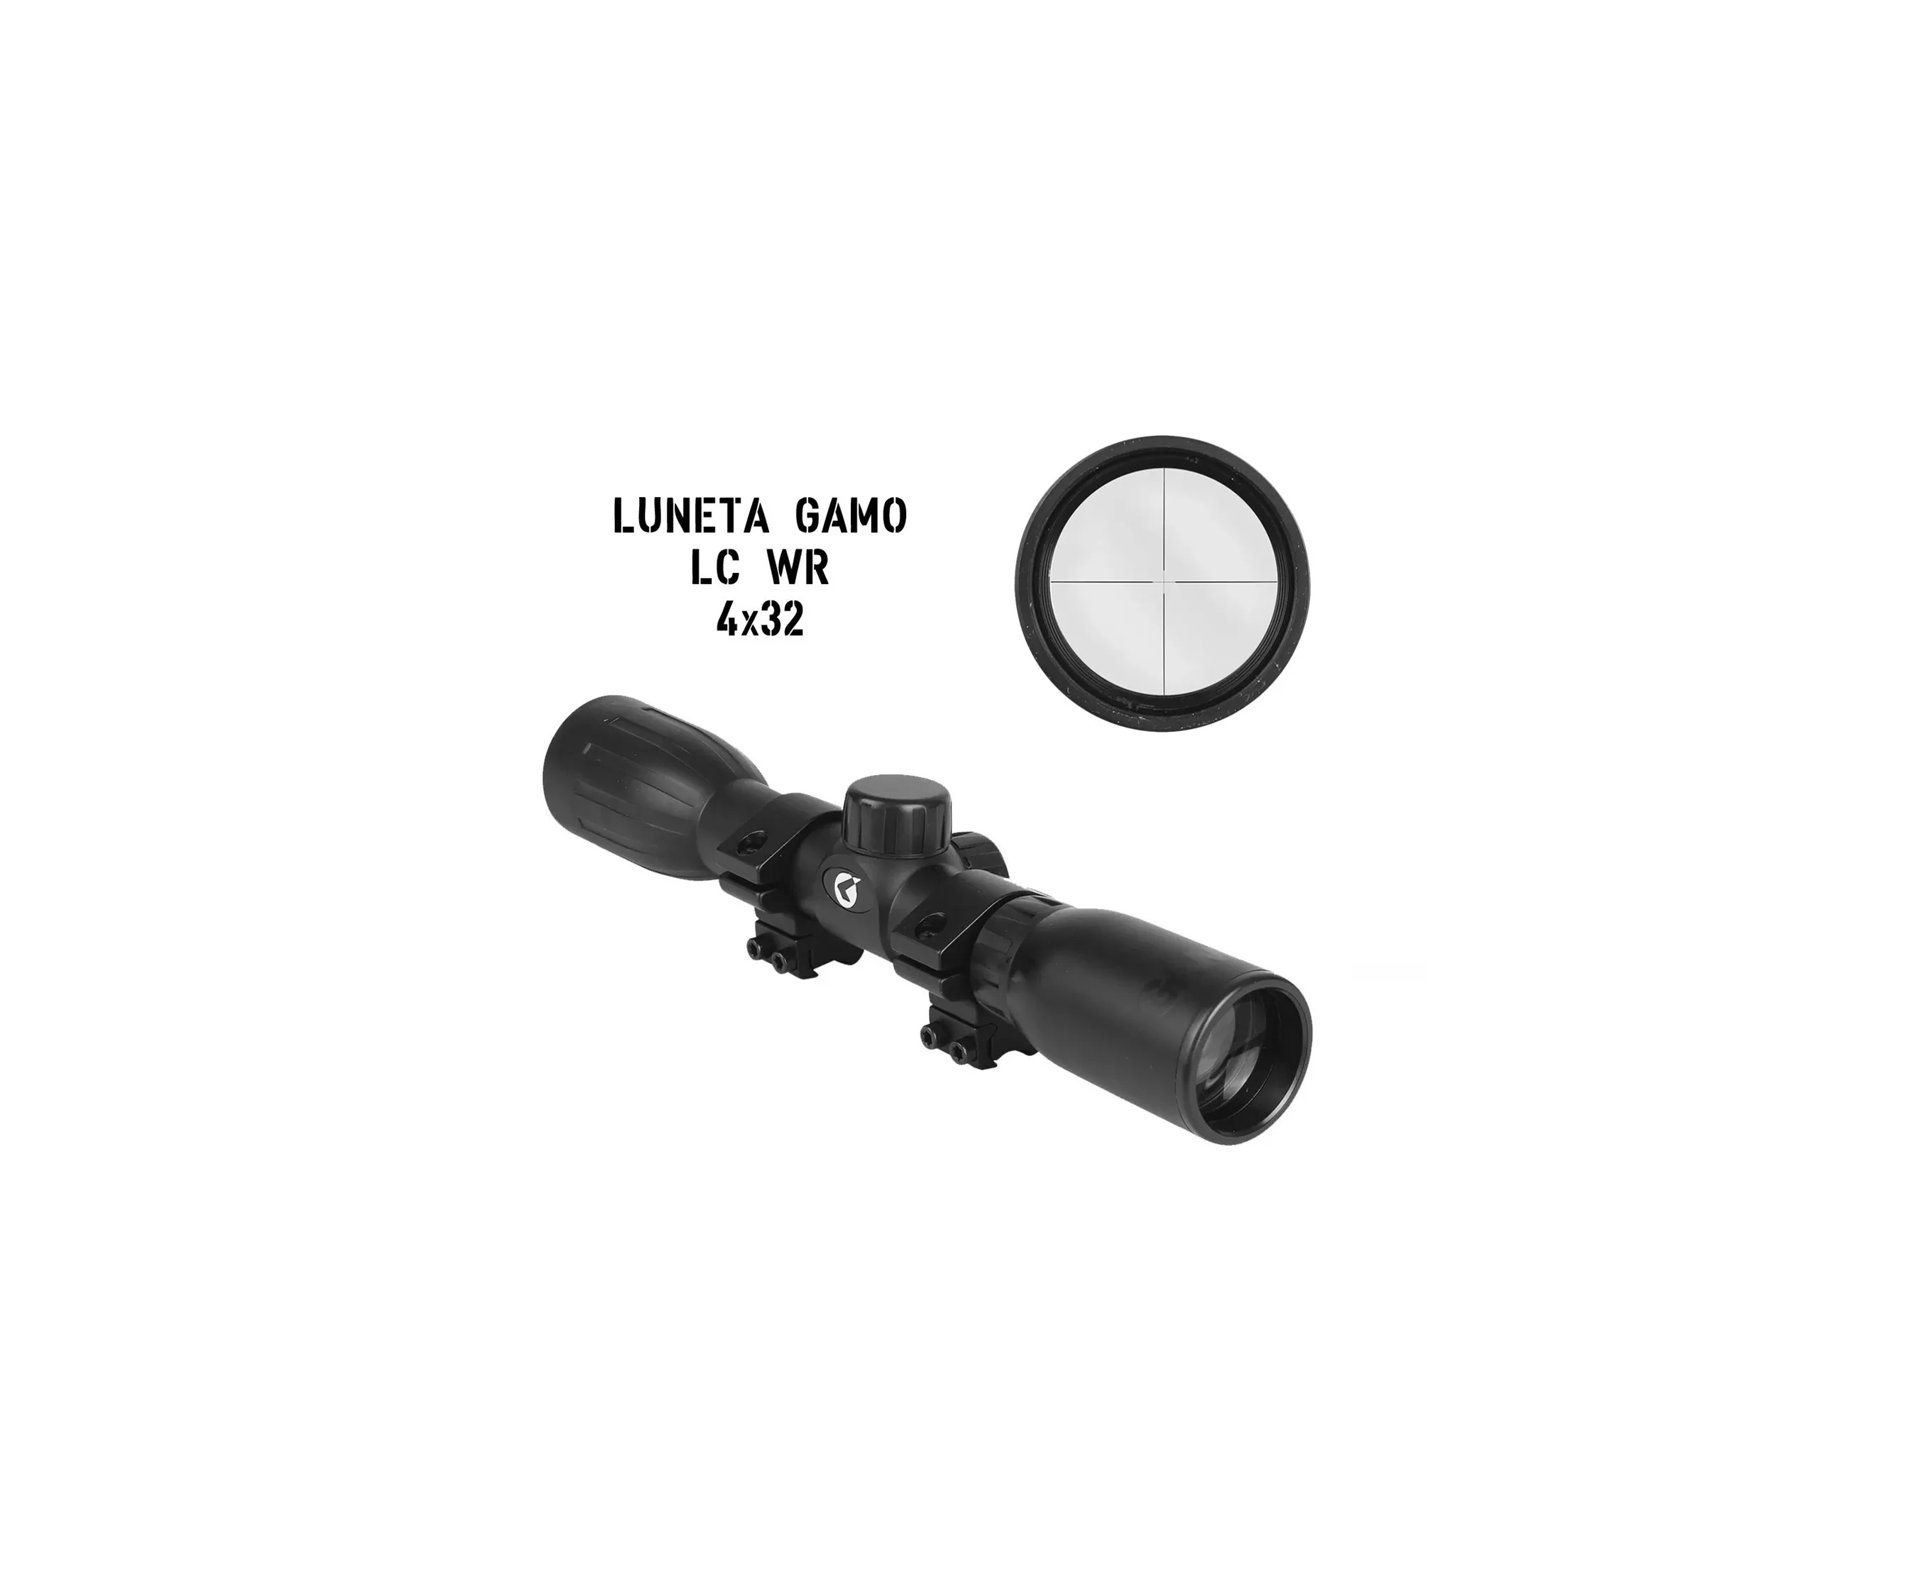 Luneta Lc4x32 Wr Elite Premium